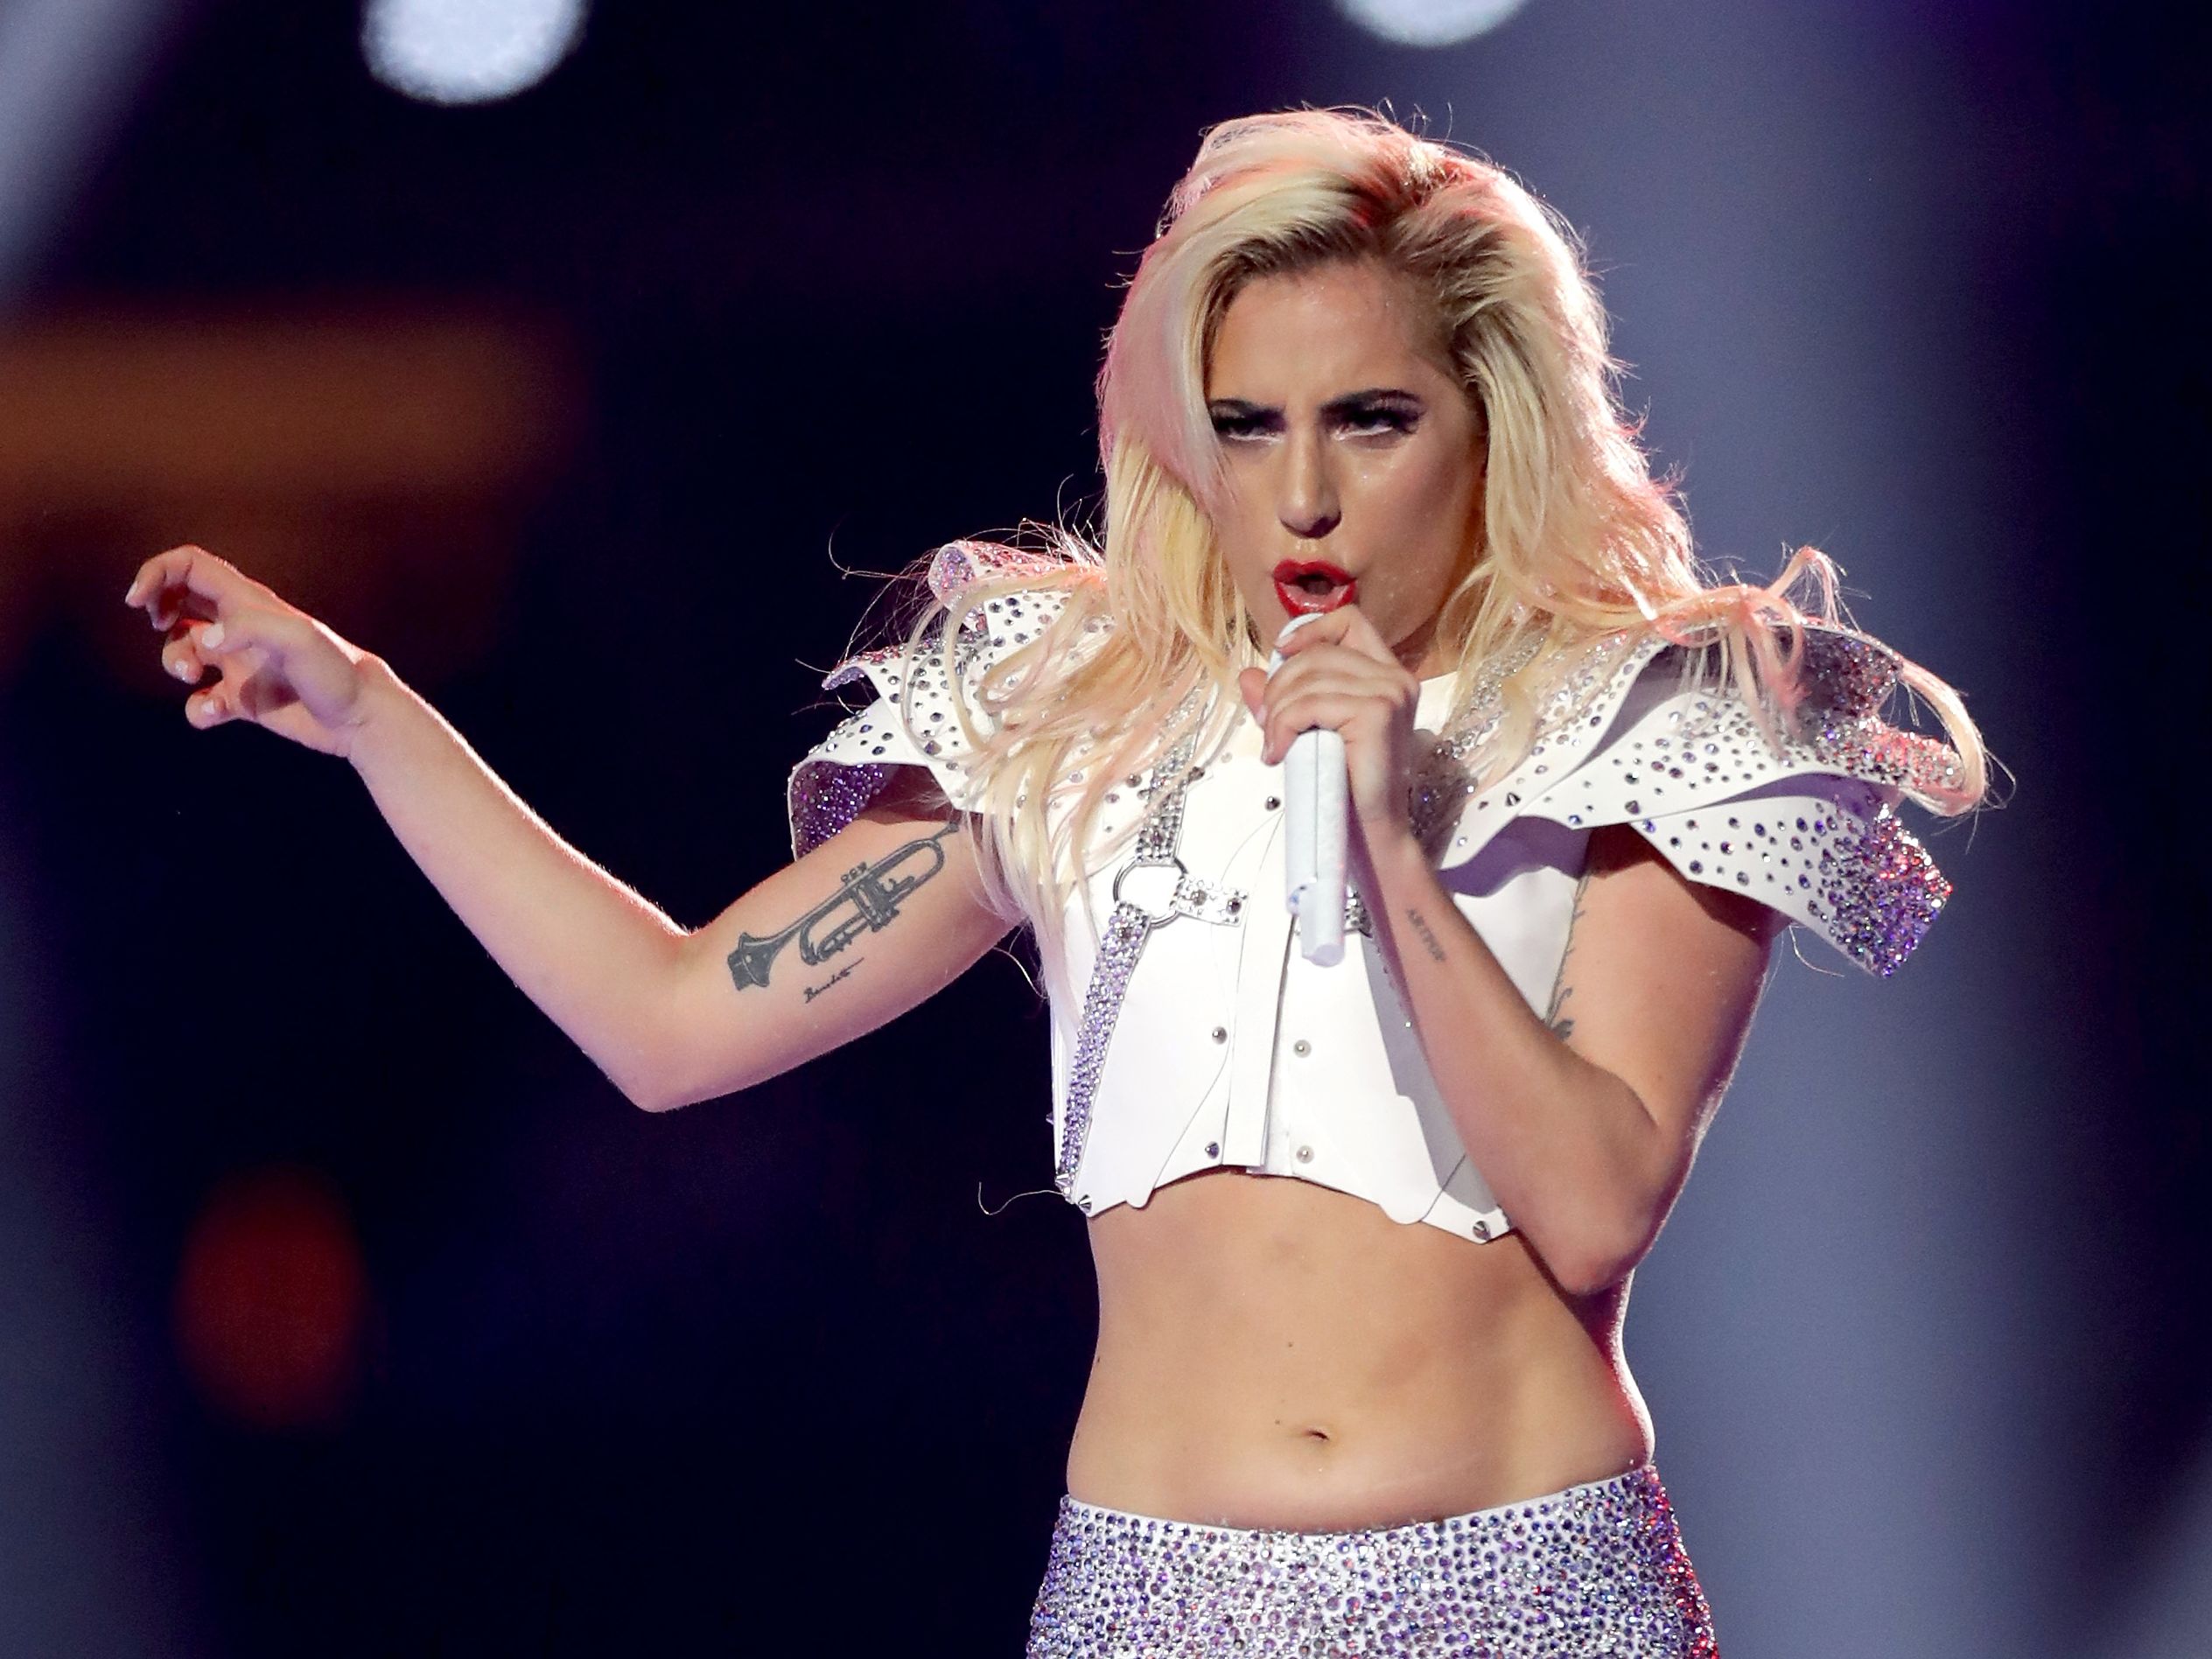 Lady Gaga - Lady Gaga responds to Super Bowl body shaming | CNN